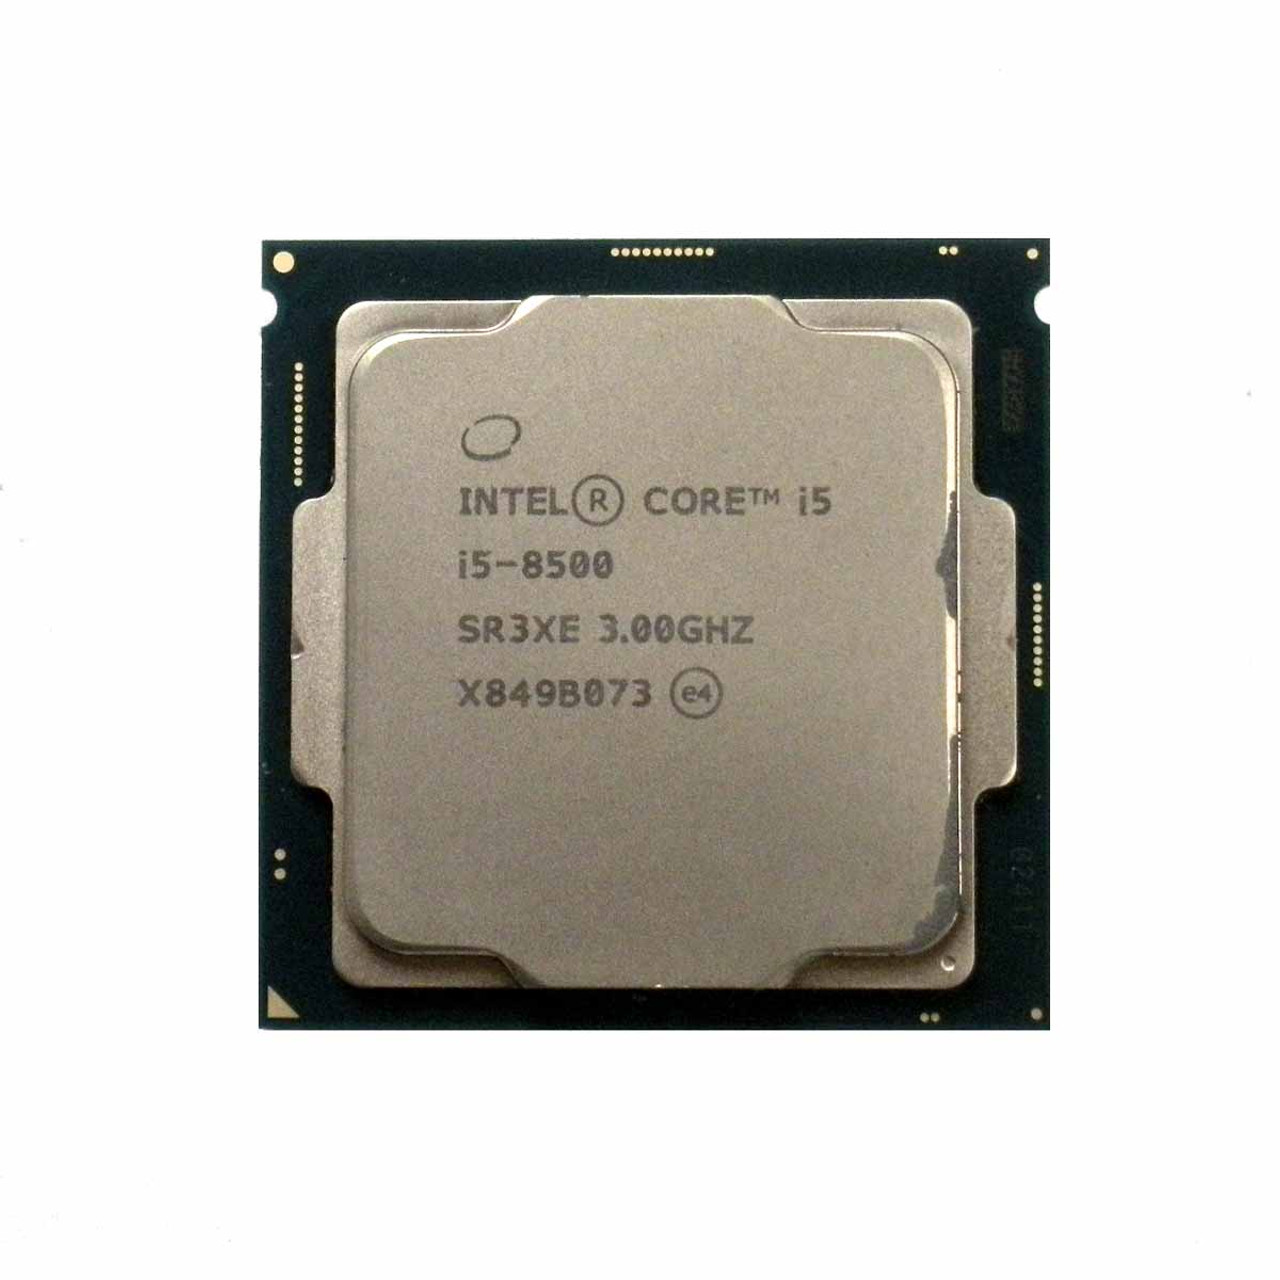 CPU corei5 8500 - PCパーツ